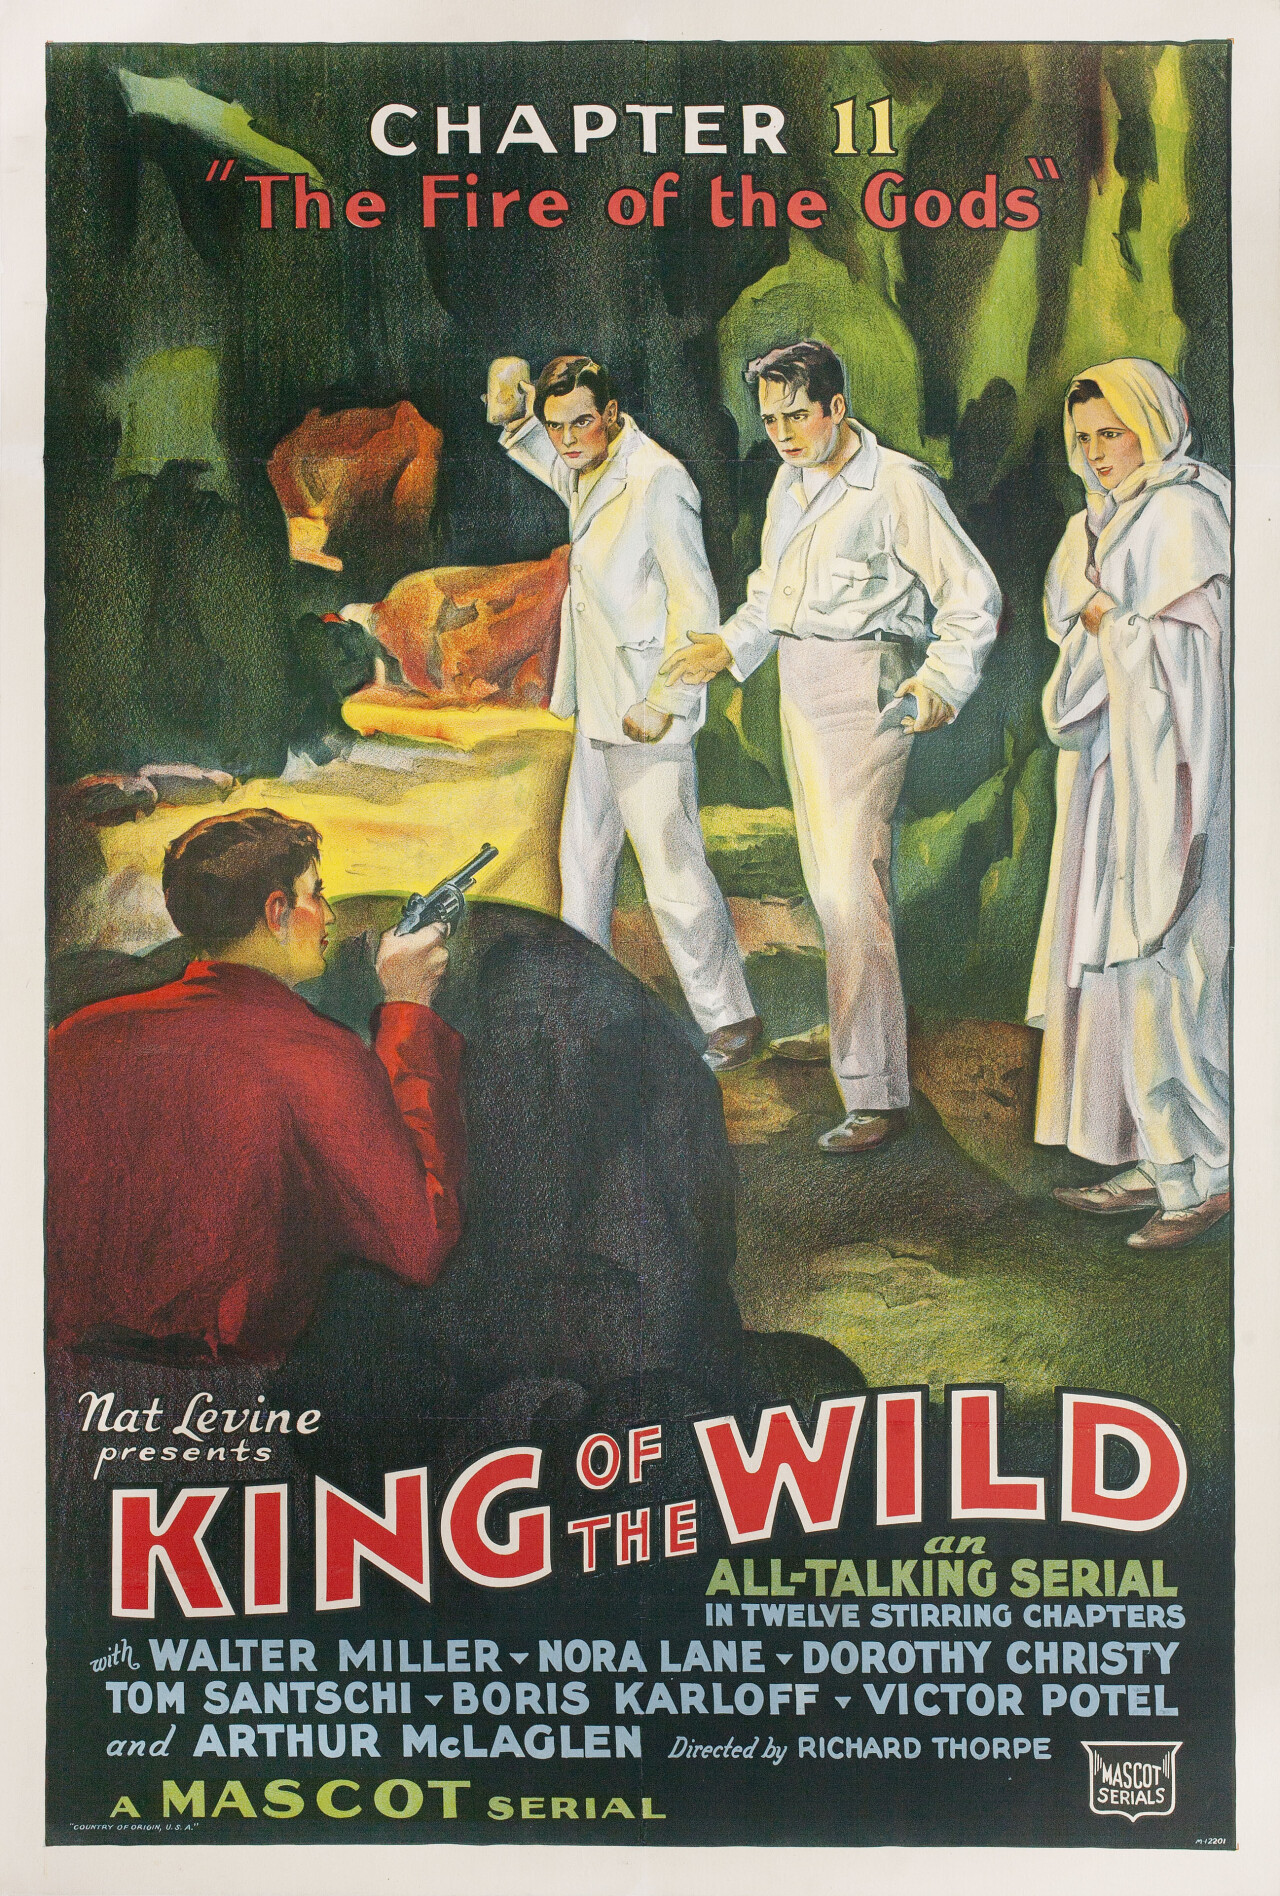 Король диких (King of the Wild, 1931), режиссёр Б. Ривз Изон, американский постер к фильму (ужасы, 1931 год)